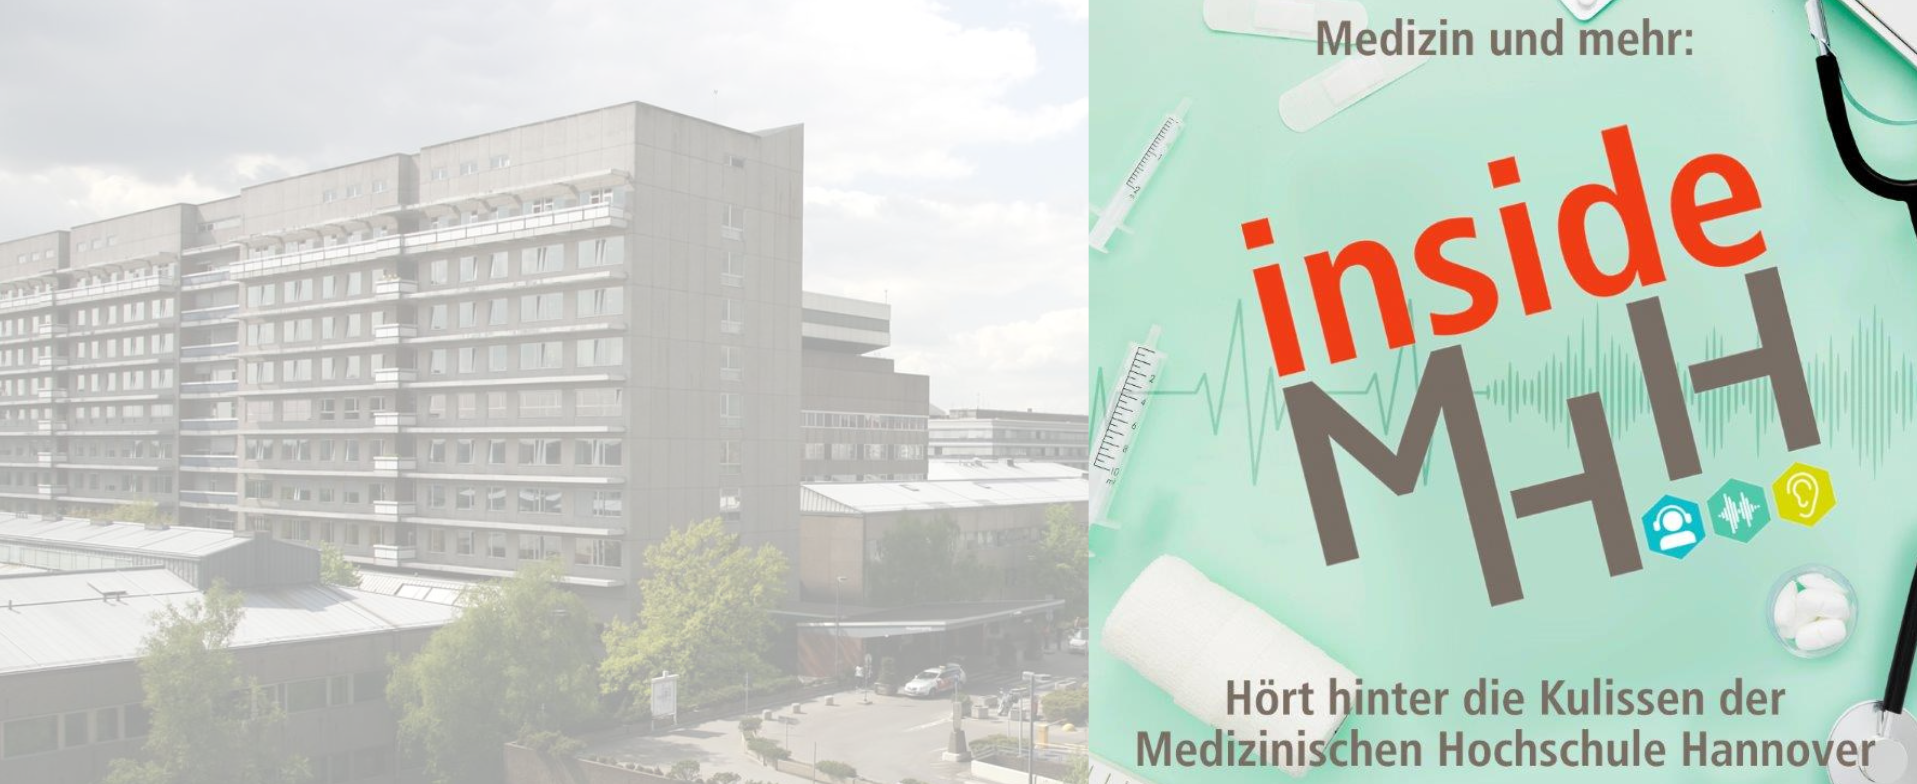 Blick auf das MHH-Bettenhaus aus der Luft, rechts eine Grafik mit dem Schriftzug Inside MHH Medizin und mehr Hört hinter die Kulissen der Medizinischen Hochschule Hannover